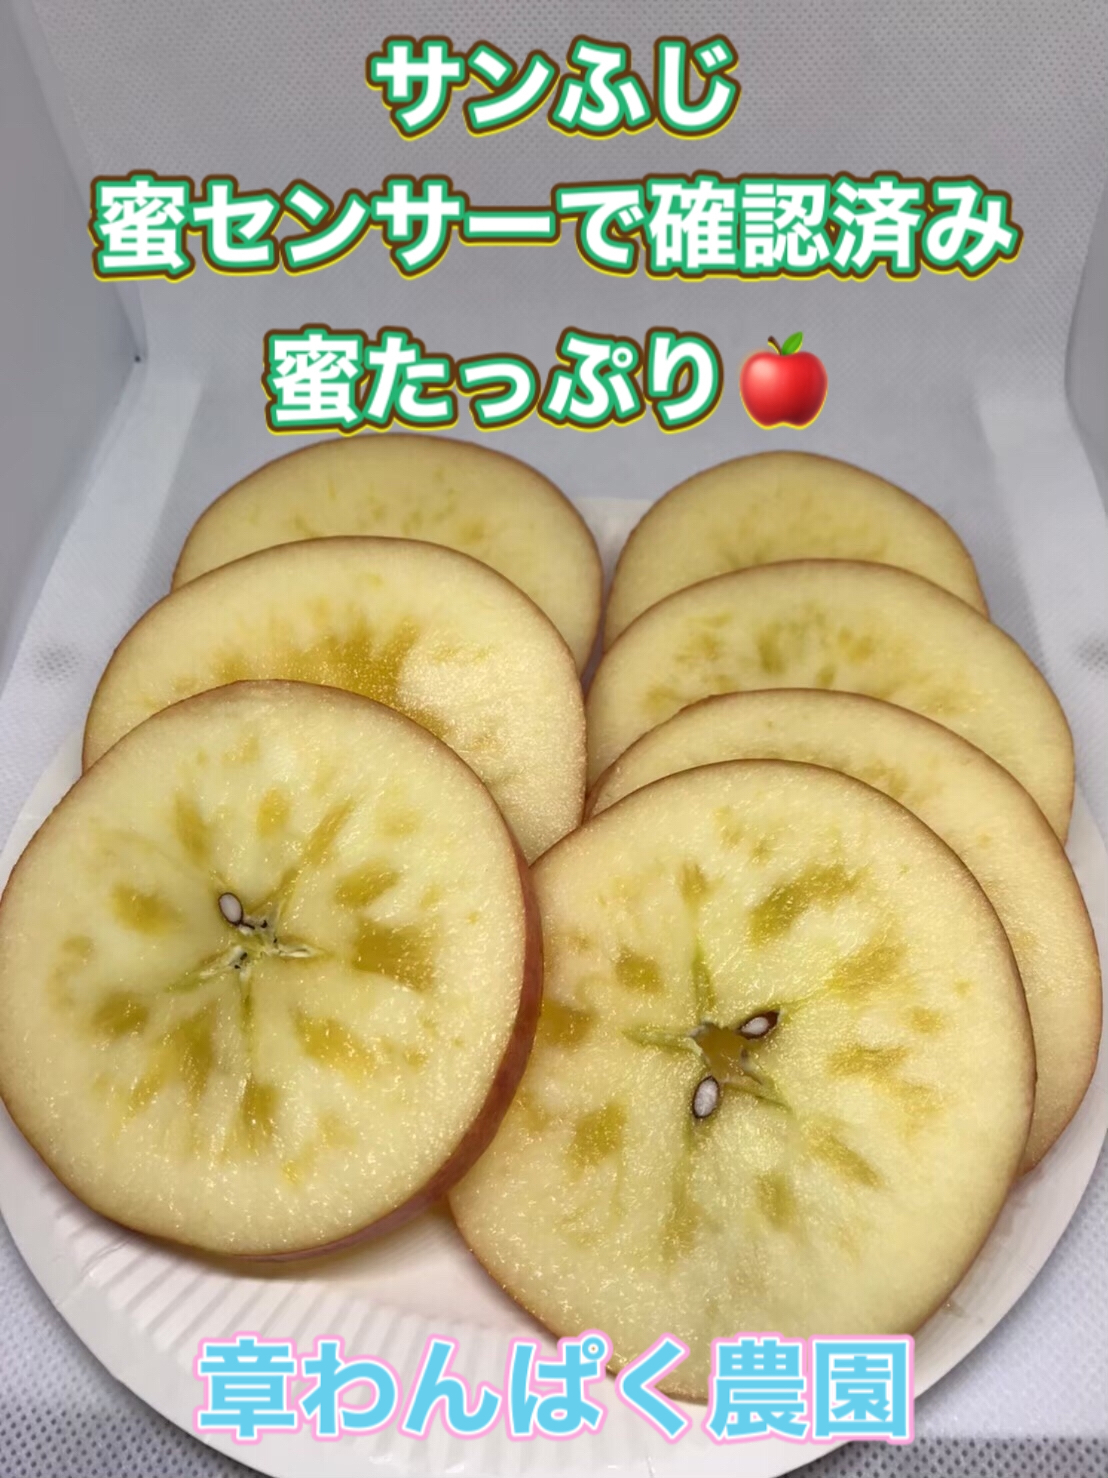 ③　特選サンふじ　L　10キロ　長野県産　減農薬　化学肥料不使用　わんぱくりんご